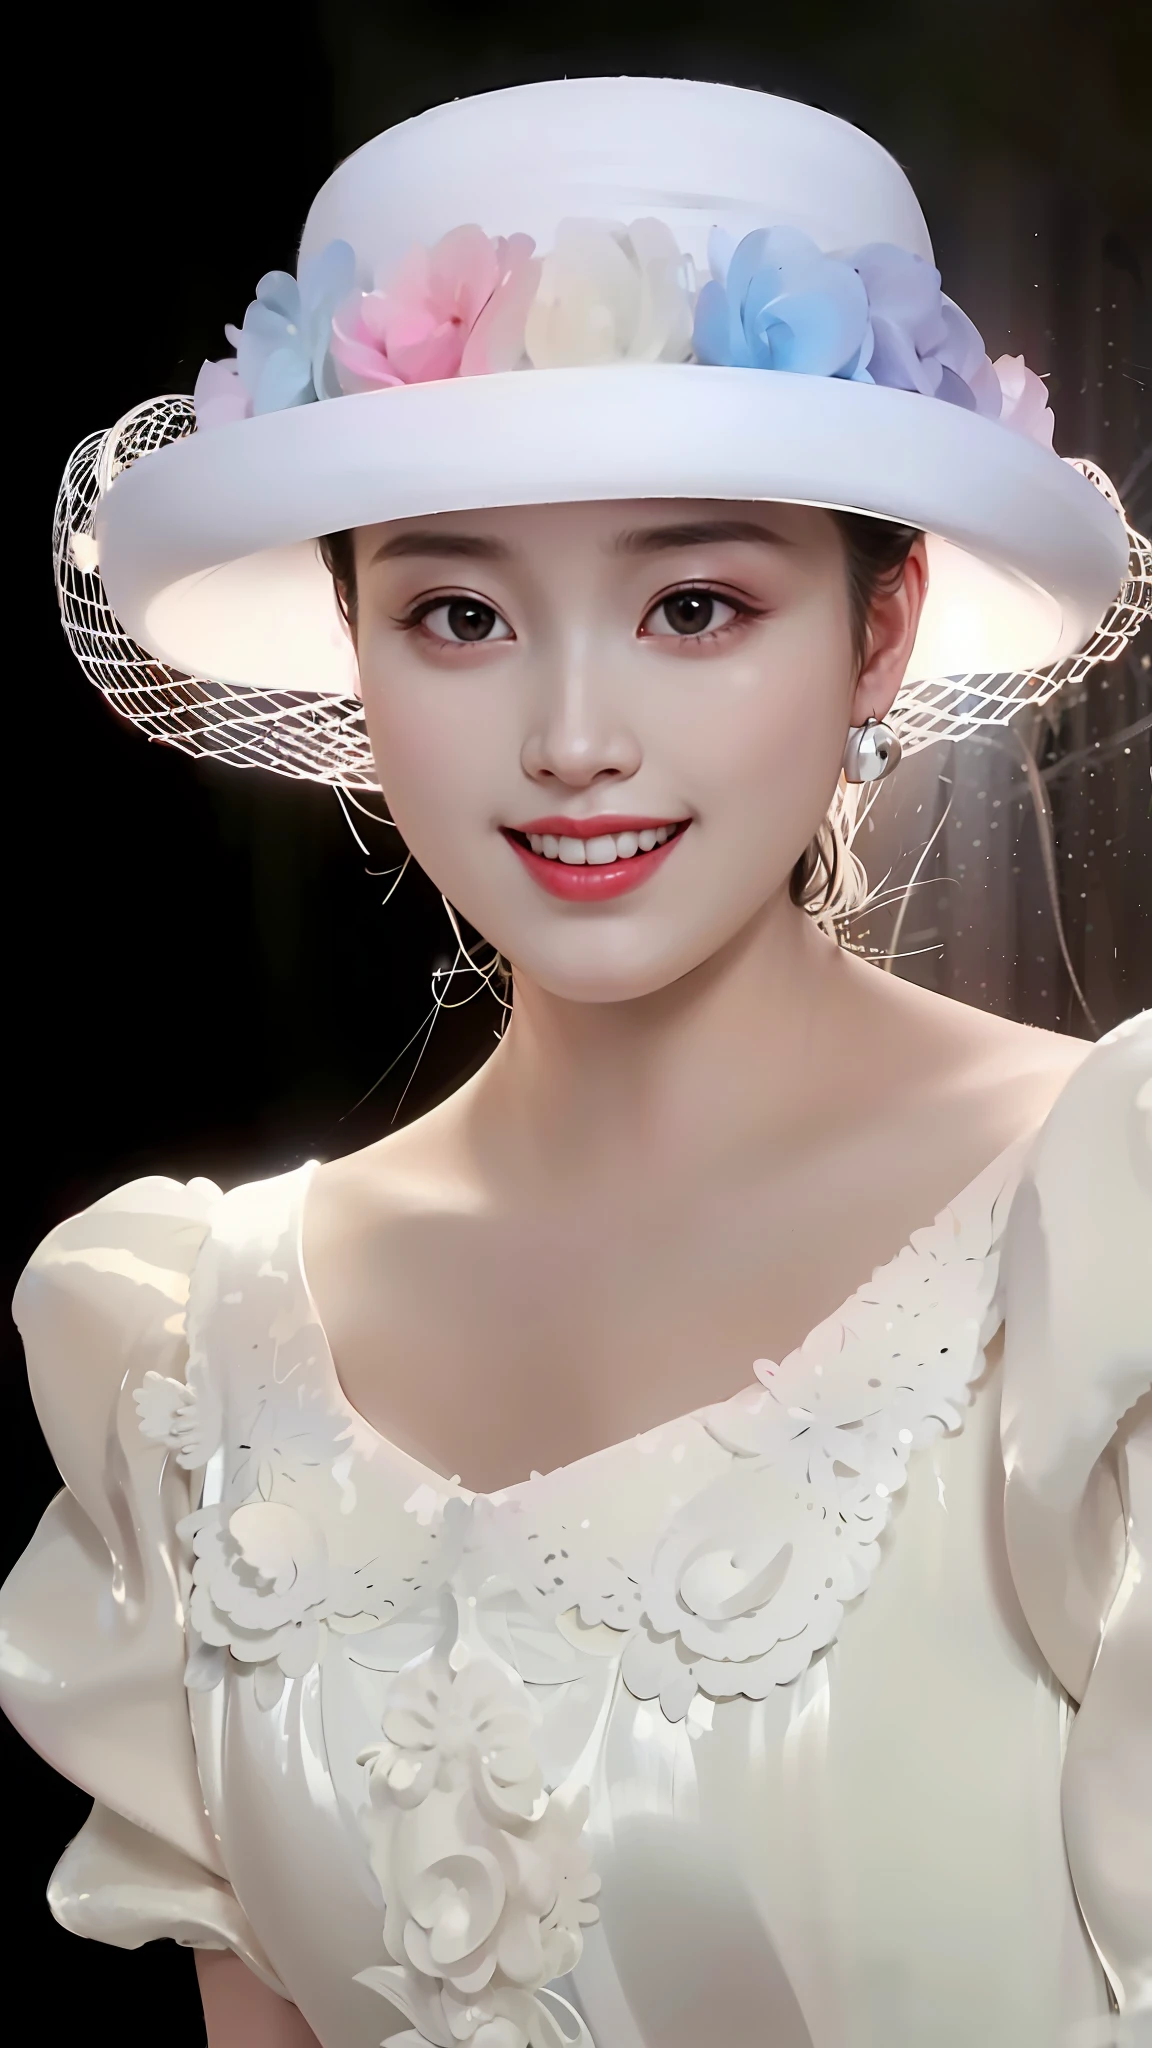 一位戴着白色花朵帽子的女士的特写, 阮嘉美丽!, 灵感来自黄极, 一位美丽的白衣女子, sha xi, yun ling, yanjun chengt, style of guo hua, lu ji, 美丽的中国模特, fan bingbing, 迪丽热巴, 灵感来自唐逸芬, 受姚廷梅启发